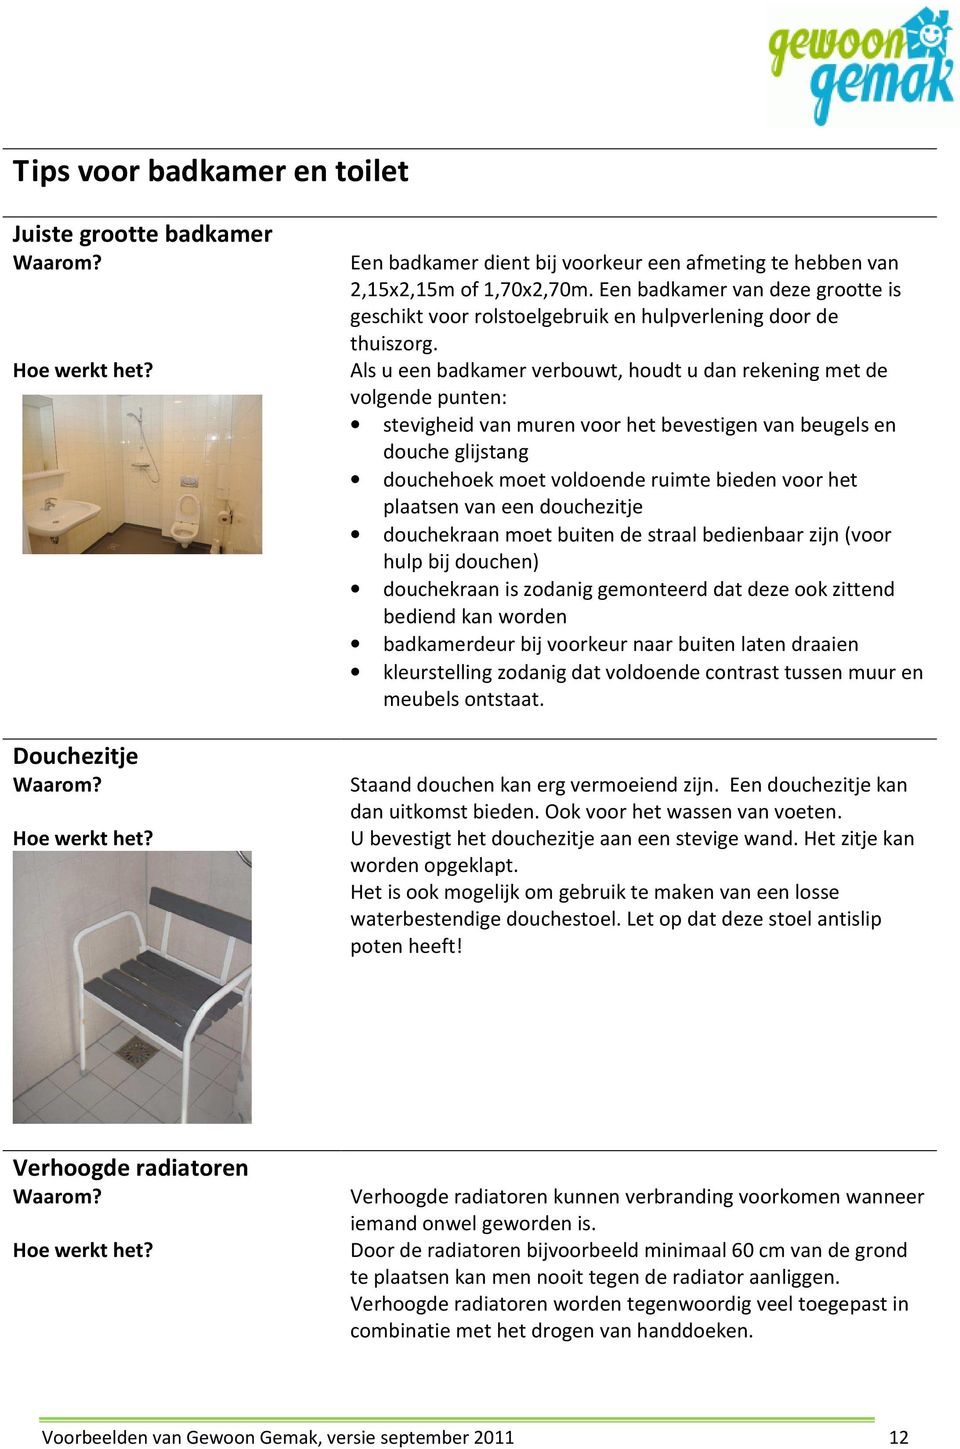 Als u een badkamer verbouwt, houdt u dan rekening met de volgende punten: stevigheid van muren voor het bevestigen van beugels en douche glijstang douchehoek moet voldoende ruimte bieden voor het